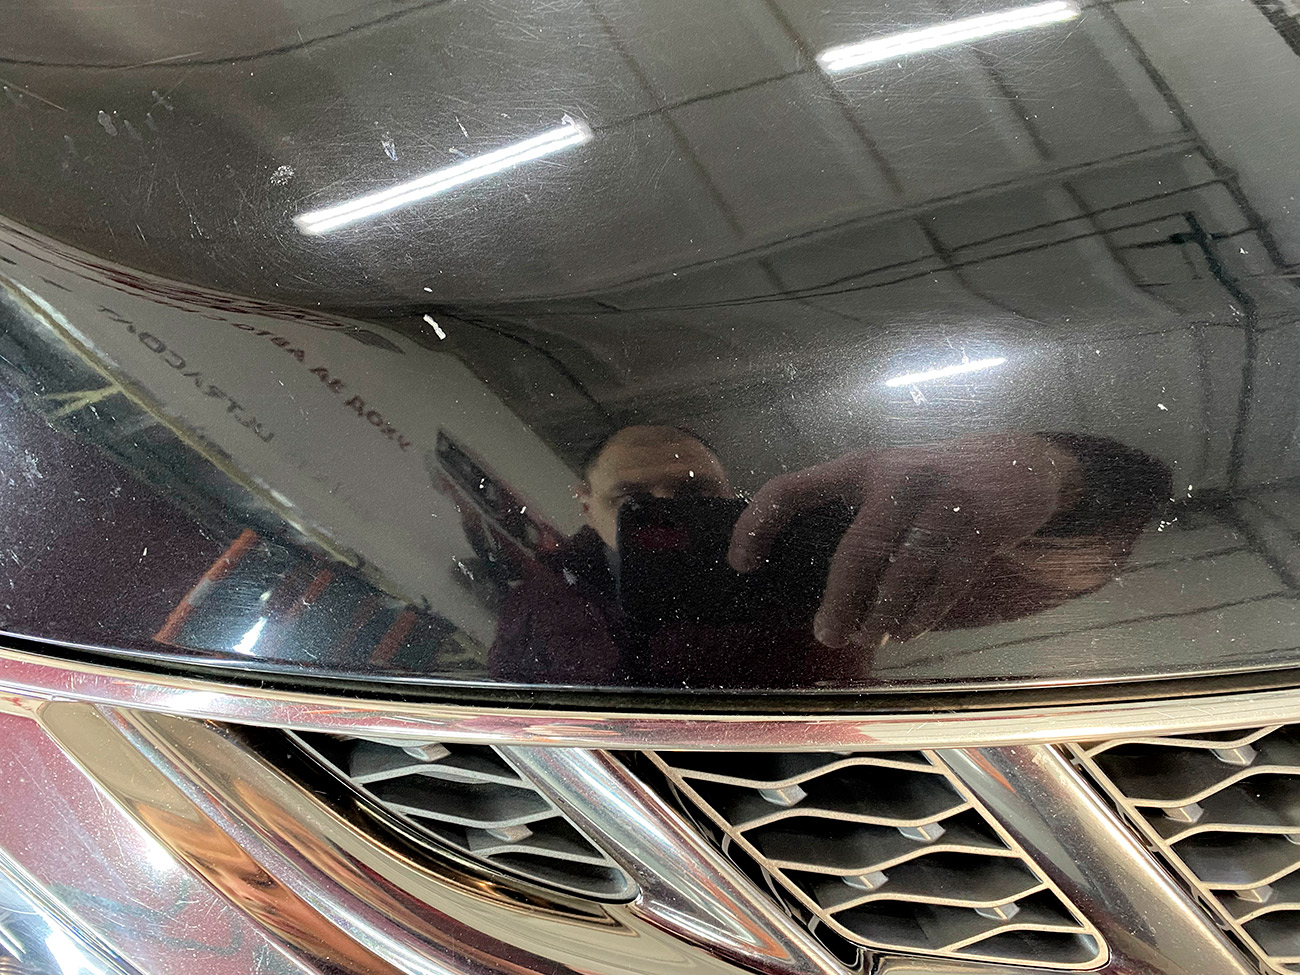 Смотреть на фото капот и решетку радиатора автомобиля Ниссан Мурано до ремонта сколов и полировки.